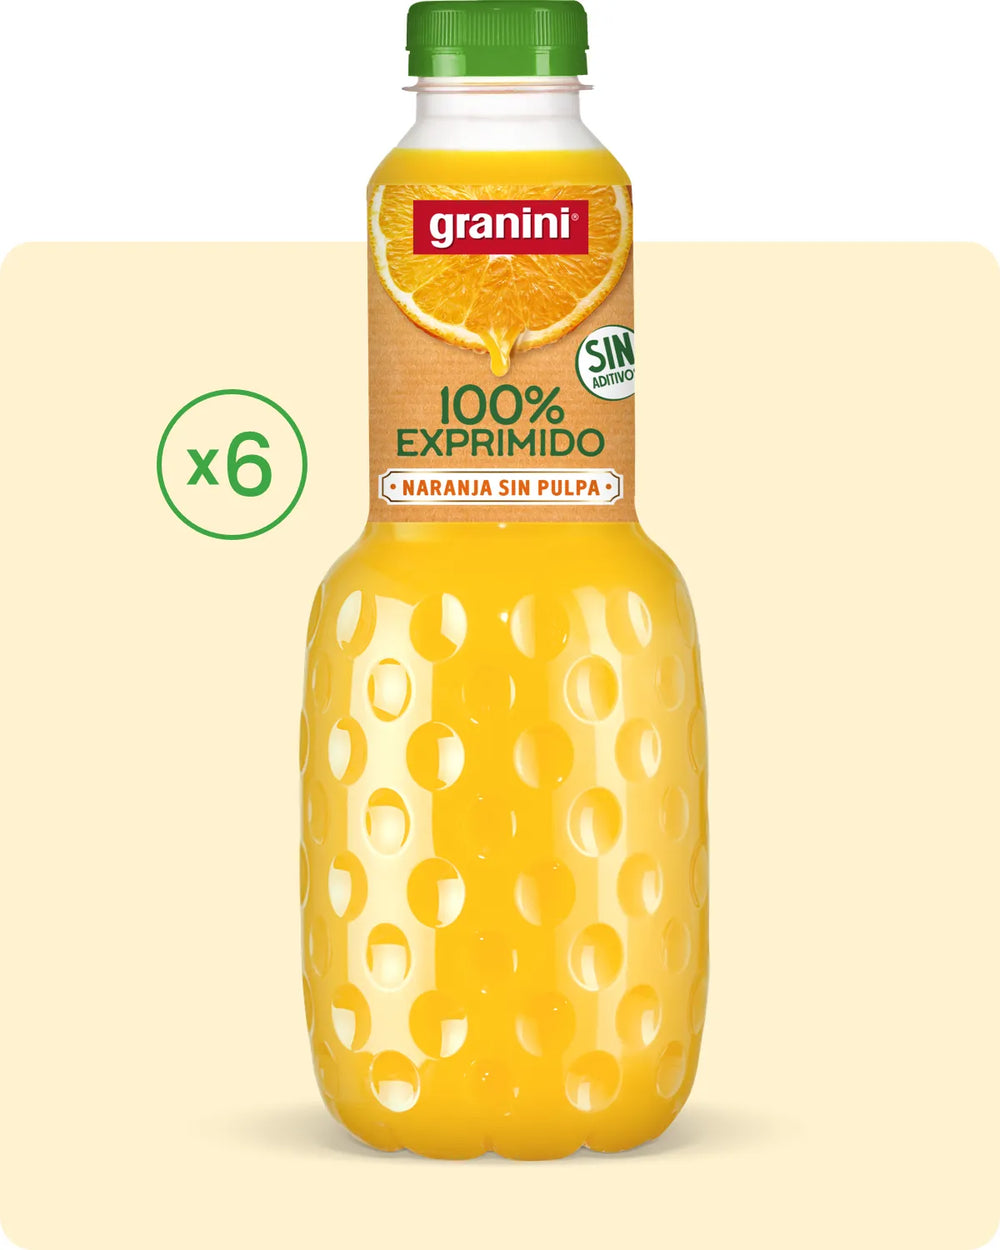 Naranja - 100% exprimido SIN pulpa - Pack 6 (6x1L)